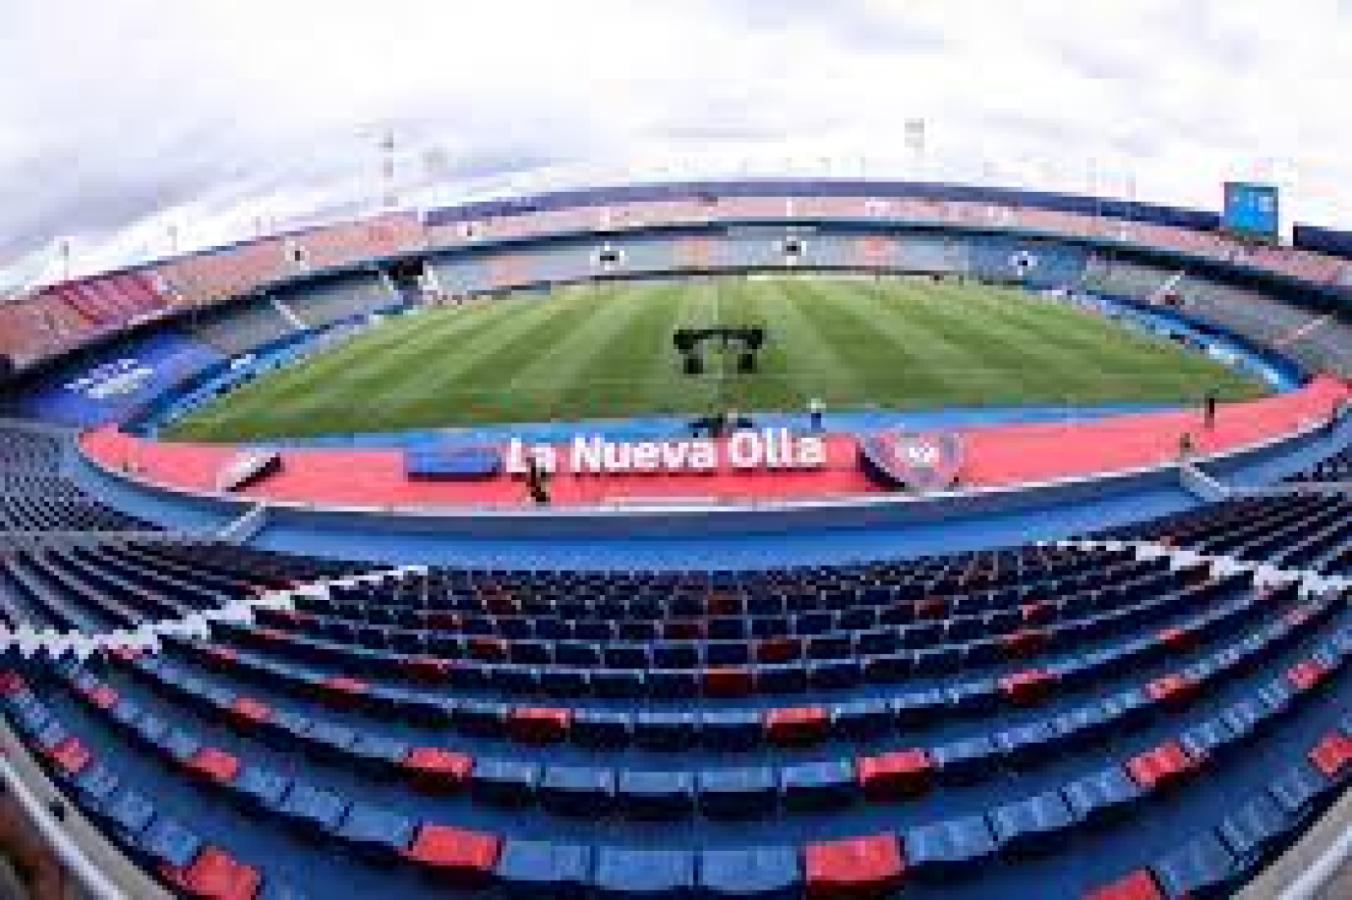 Imagen En el estadio La Nueva Olla, Boca contará con 20 mil localidades disponibles.